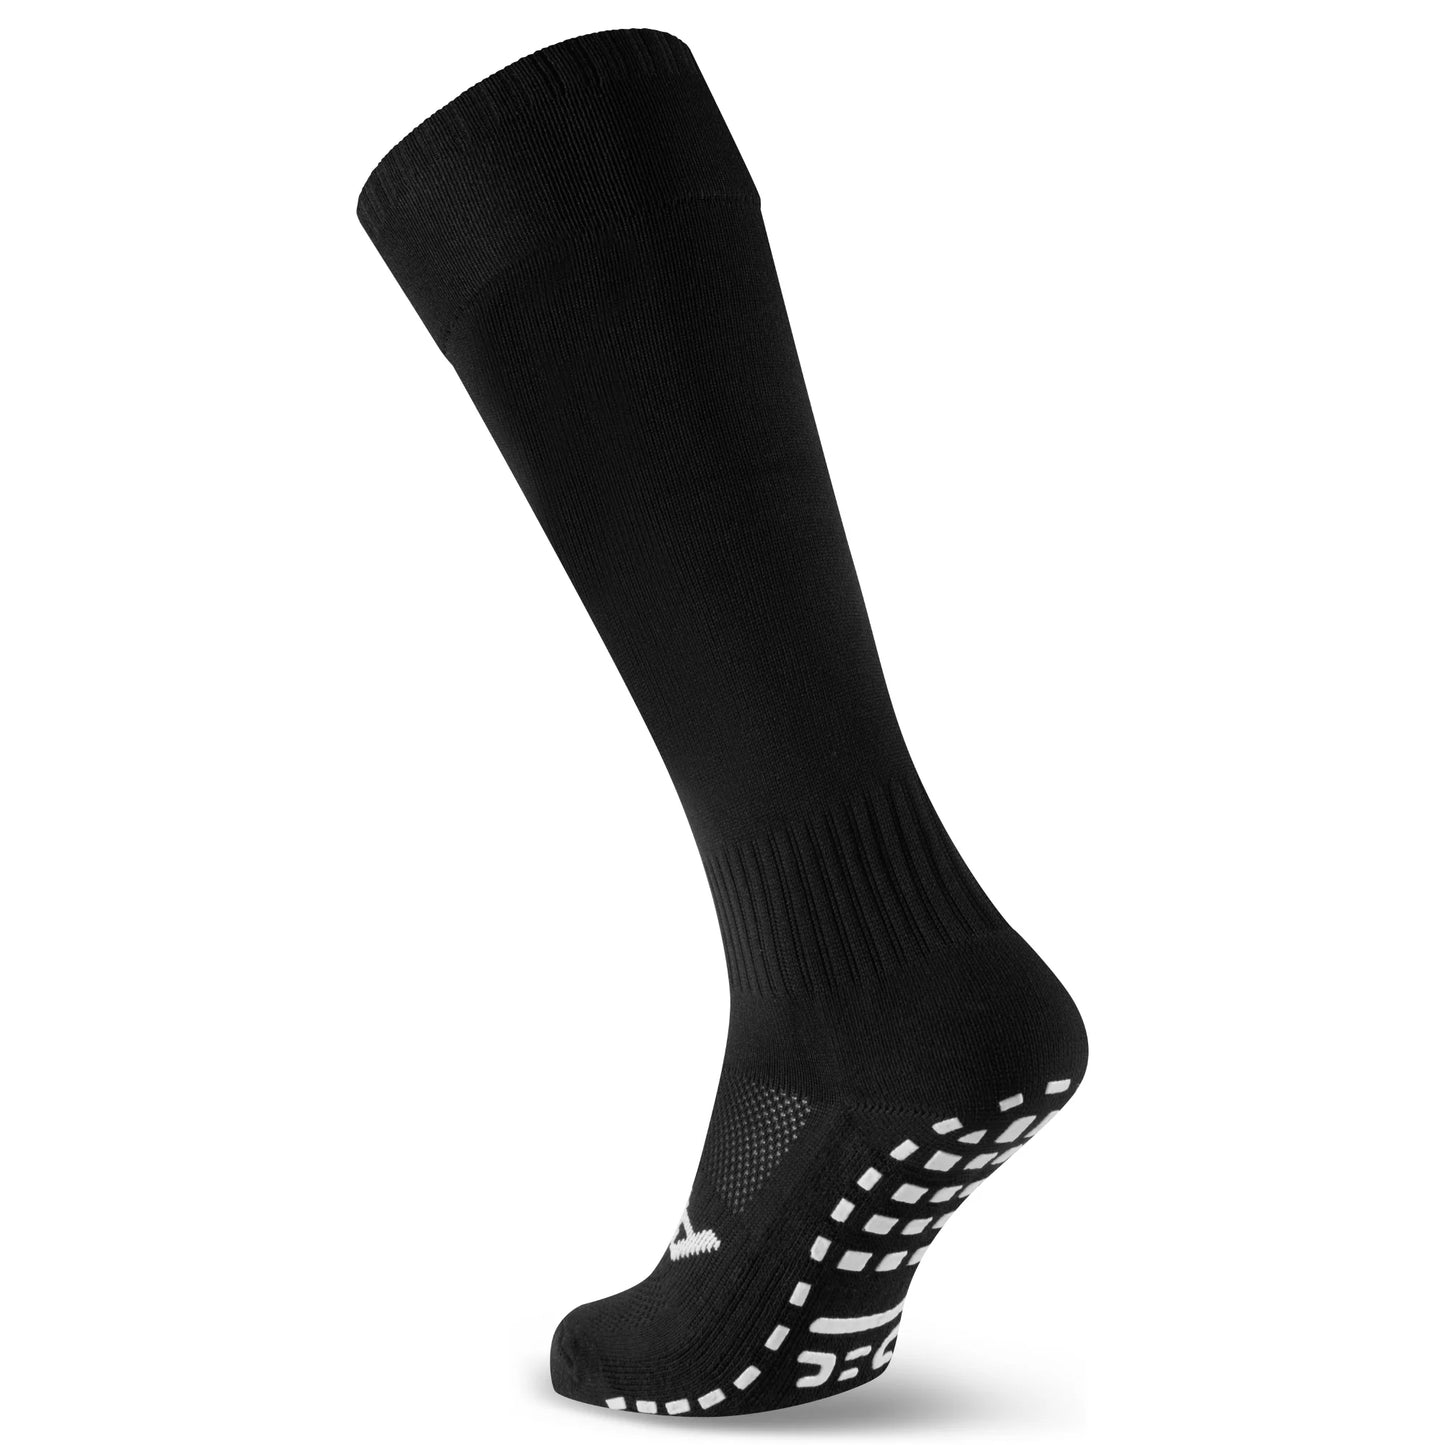 ATAK SHOX Full Length Grip Socks